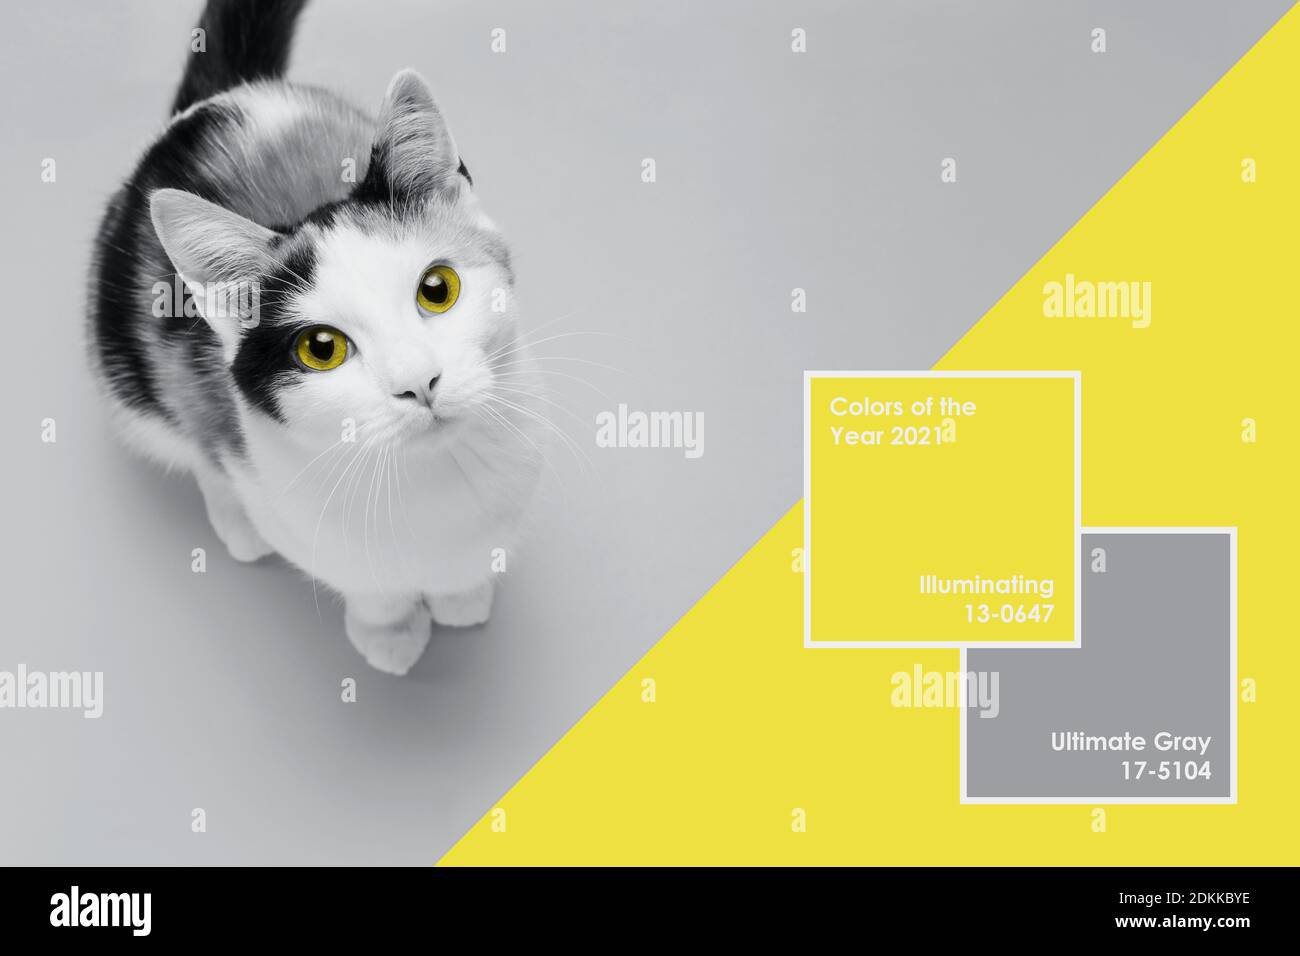 Le joli petit chaton se trouve sur un fond jaune et gris ultime. Bannière sur les animaux de compagnie. Design créatif montrant les couleurs de l'année 2021 Banque D'Images